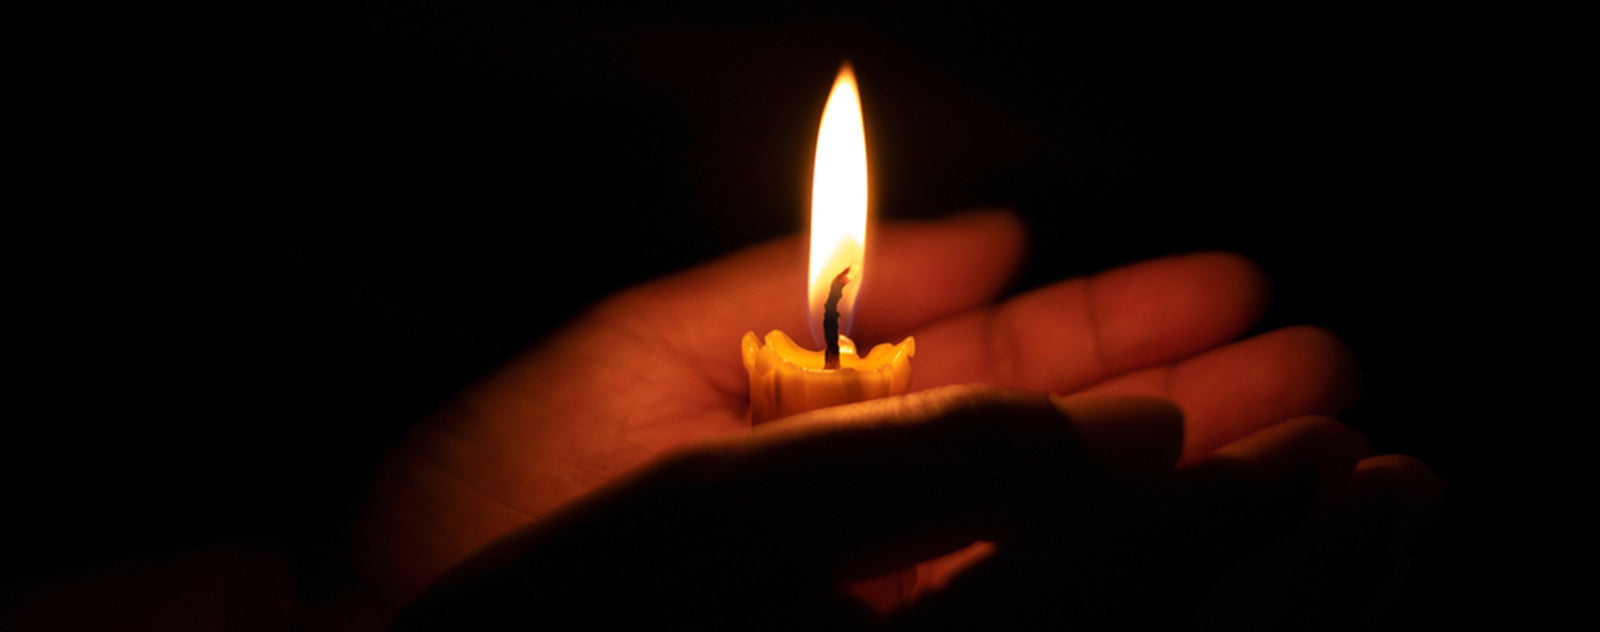 Faire allumer une bougie et prier à vos intentions - Association Diocésaine  de la Réunion